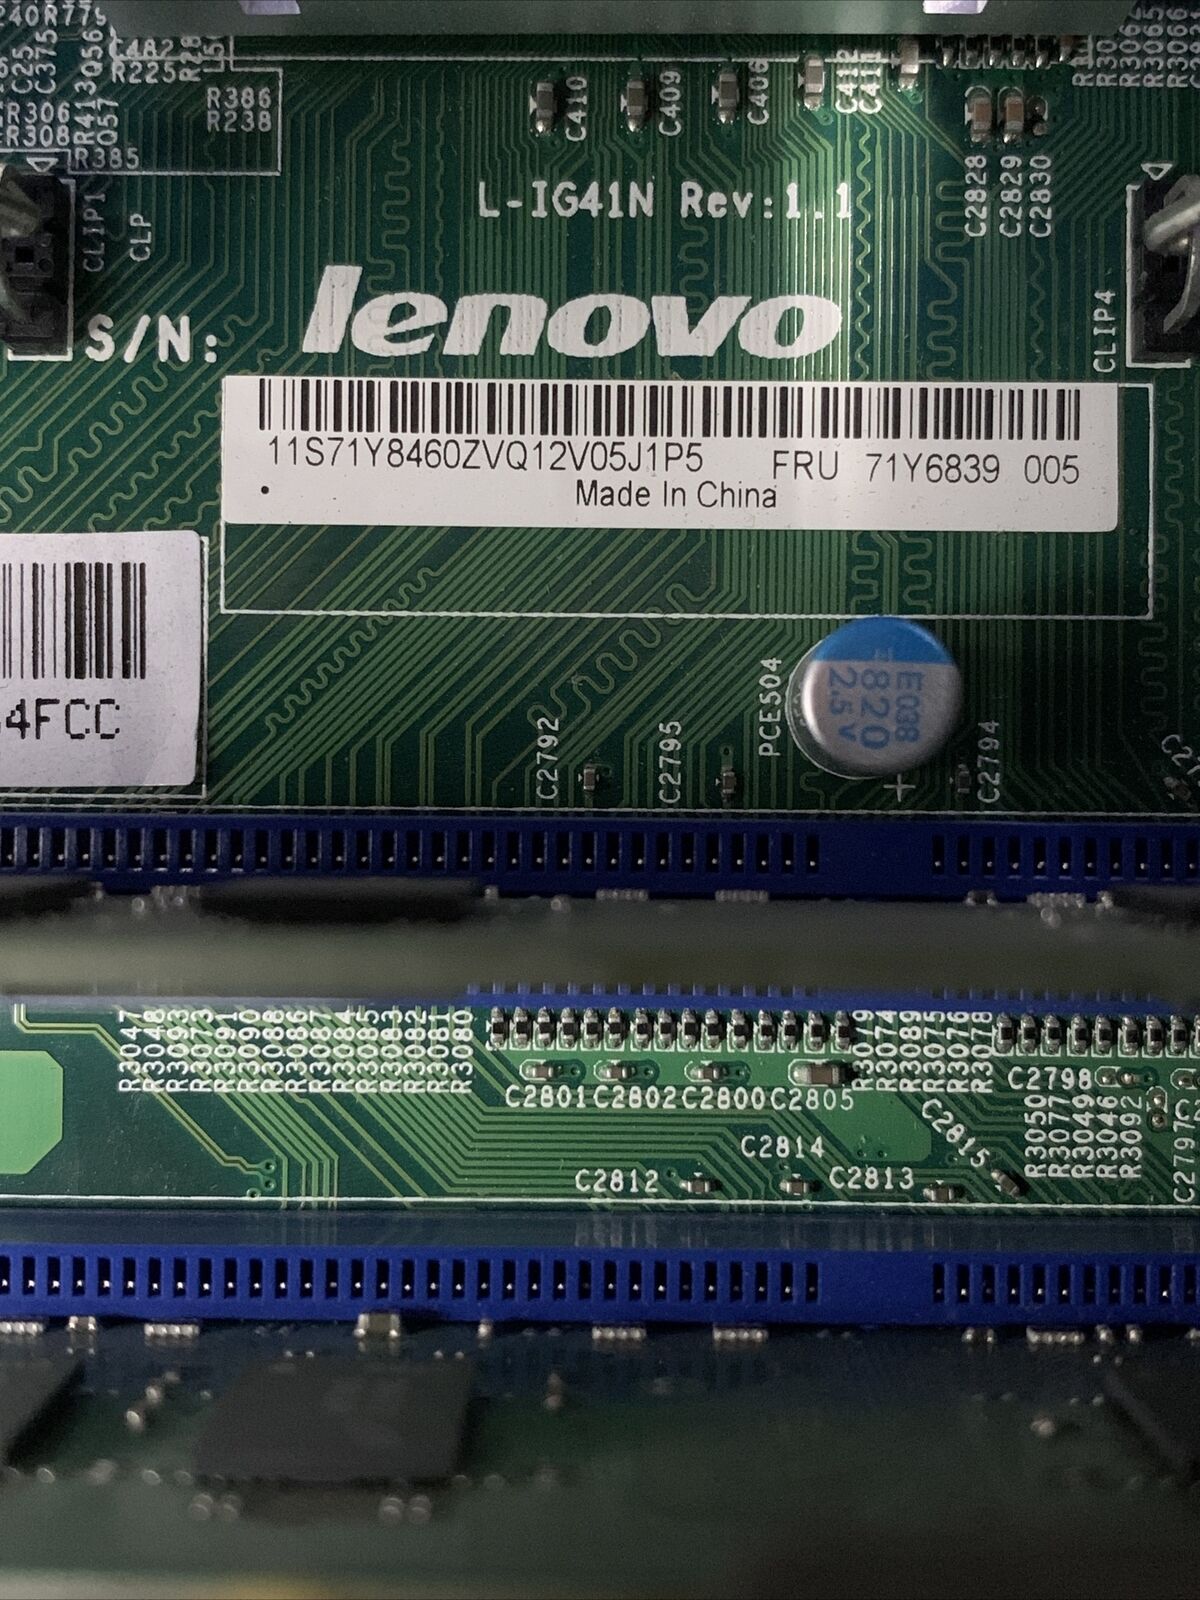 Lenovo ThinkCentre M58e DT Intel Pentium Dual-Core E6300 2.8GHz 4GB RAM No HDD